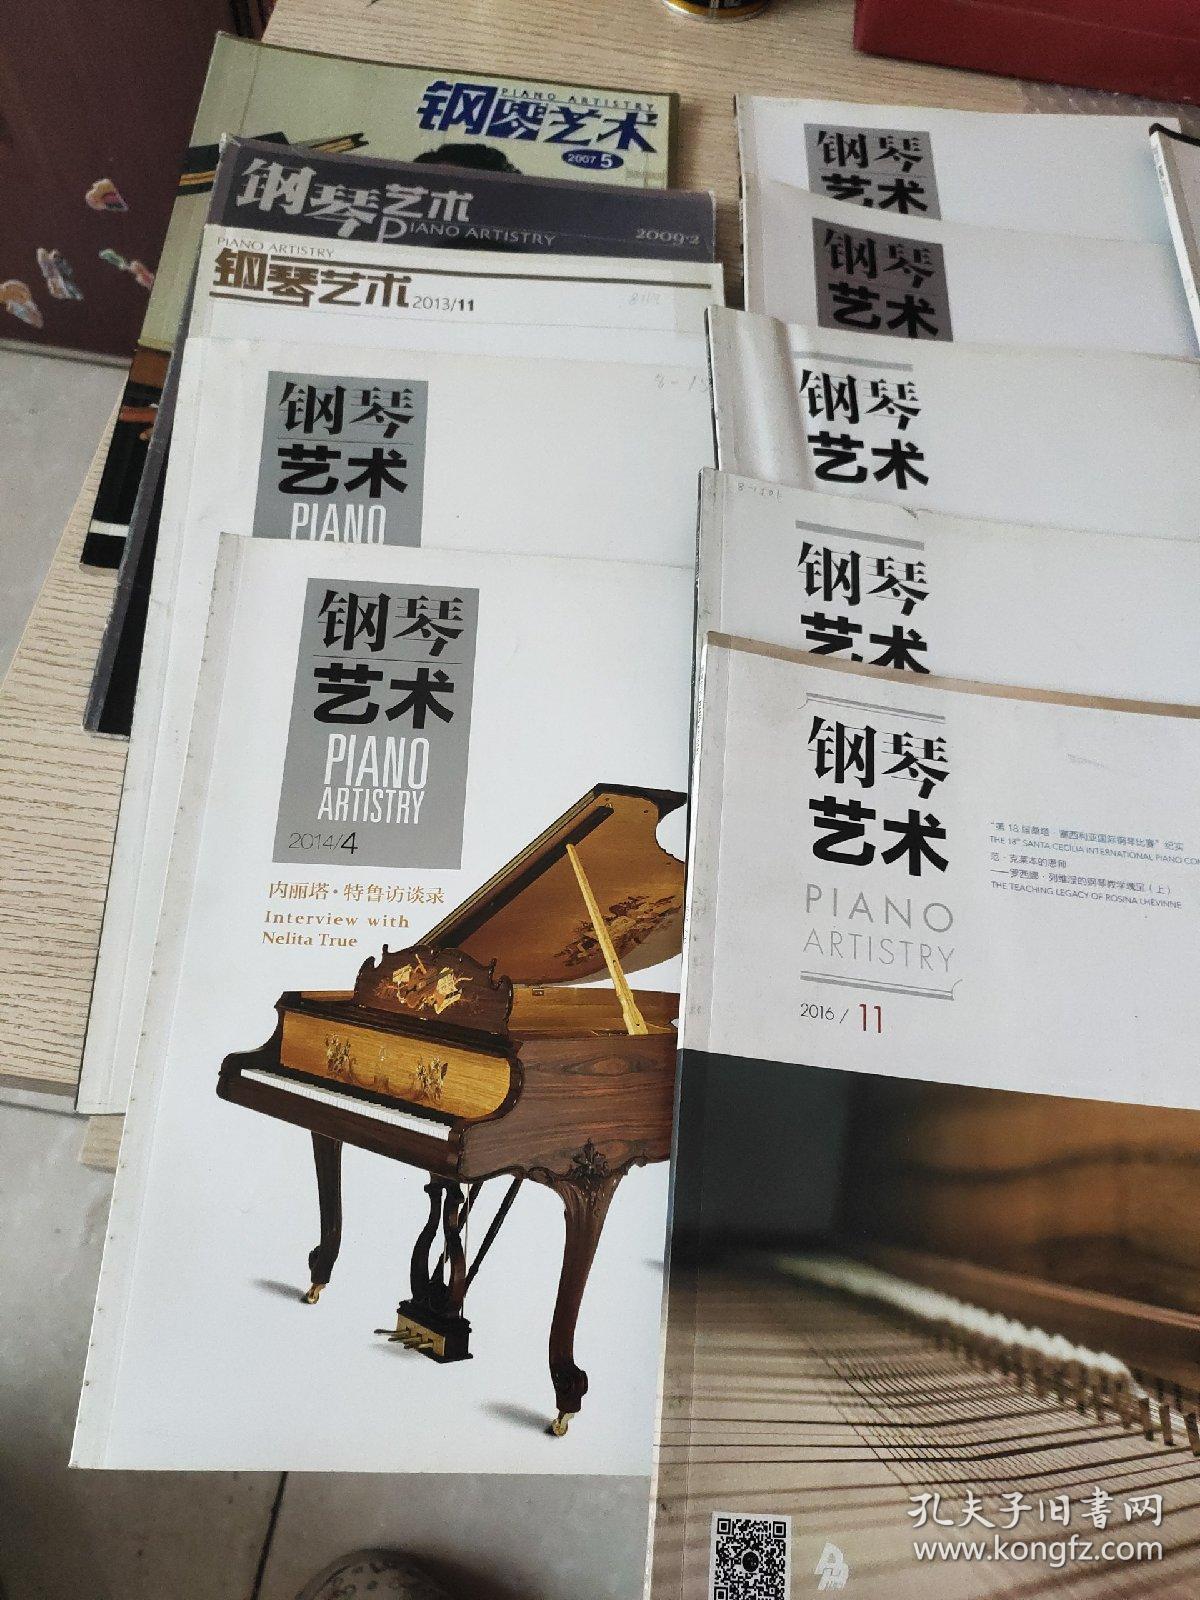 钢琴艺术杂志 2007年第5期、2009年第2期、2013年第11期、2014年第2、3、4、5期、2015年第1、6期、2016年第7、11期、2017年第3期、2018年第10、11期 （共14册合售）